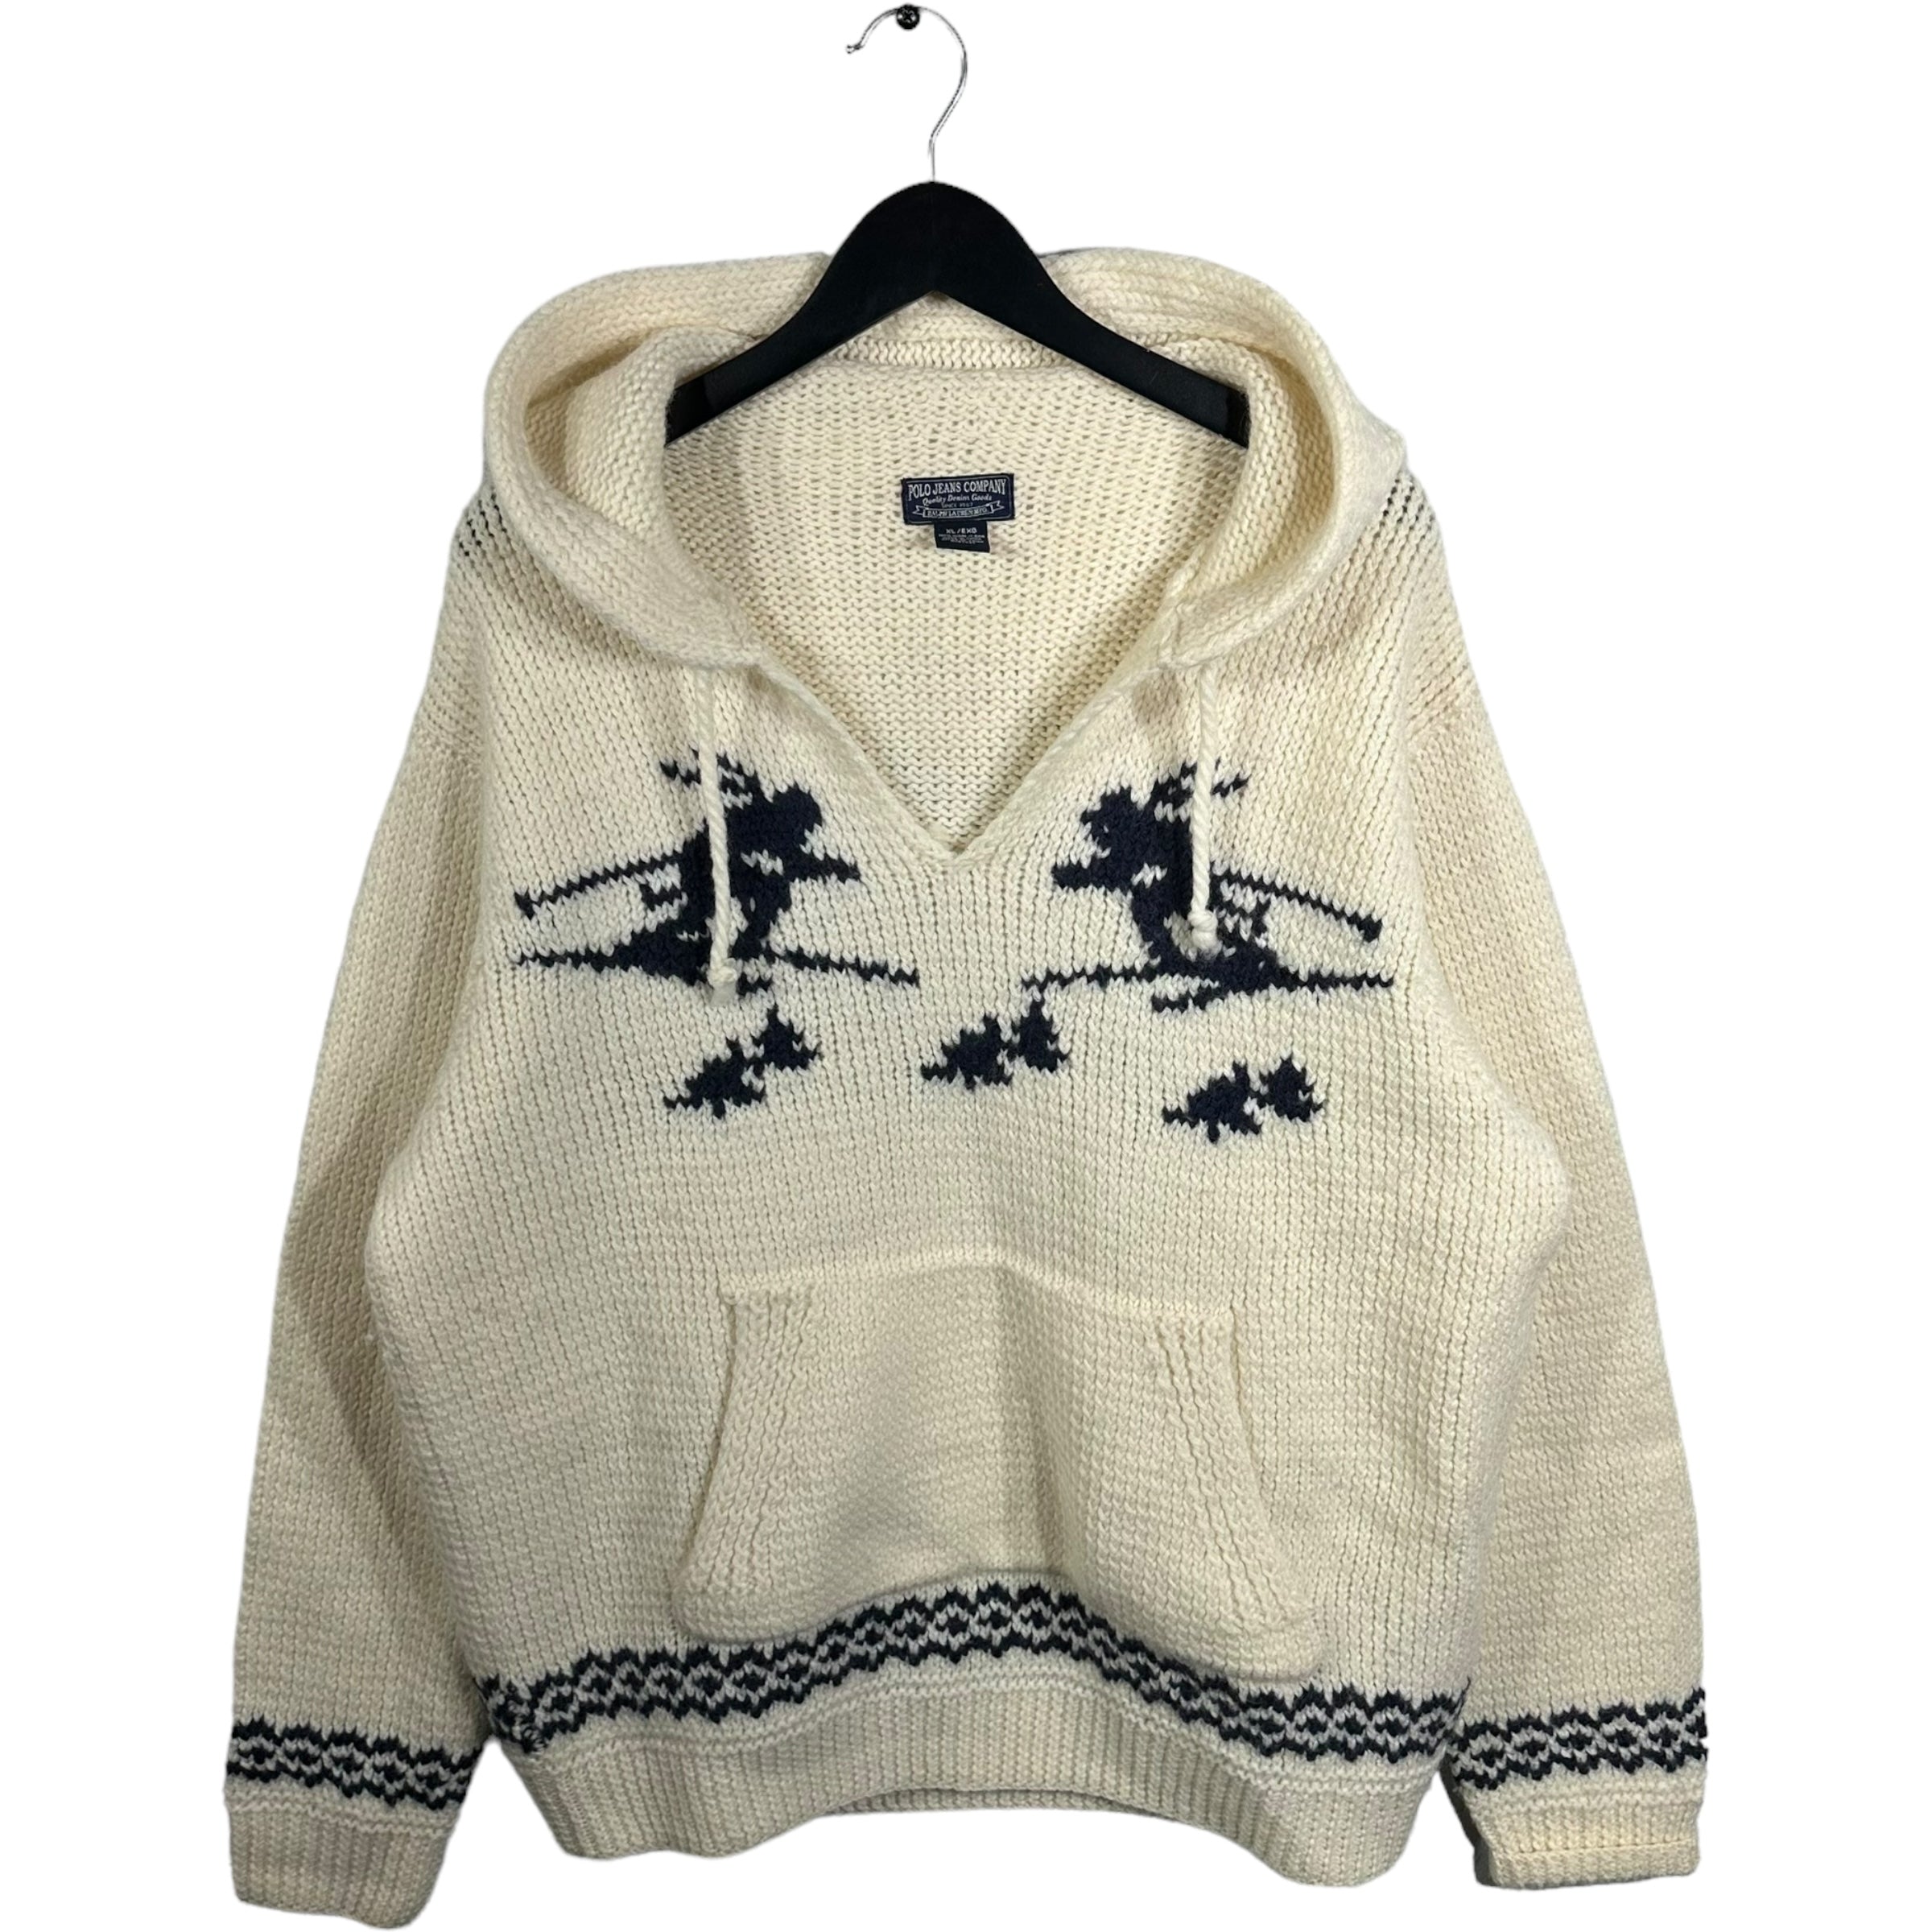 Vintage Ski Pattern Knit Hoodie Sweater